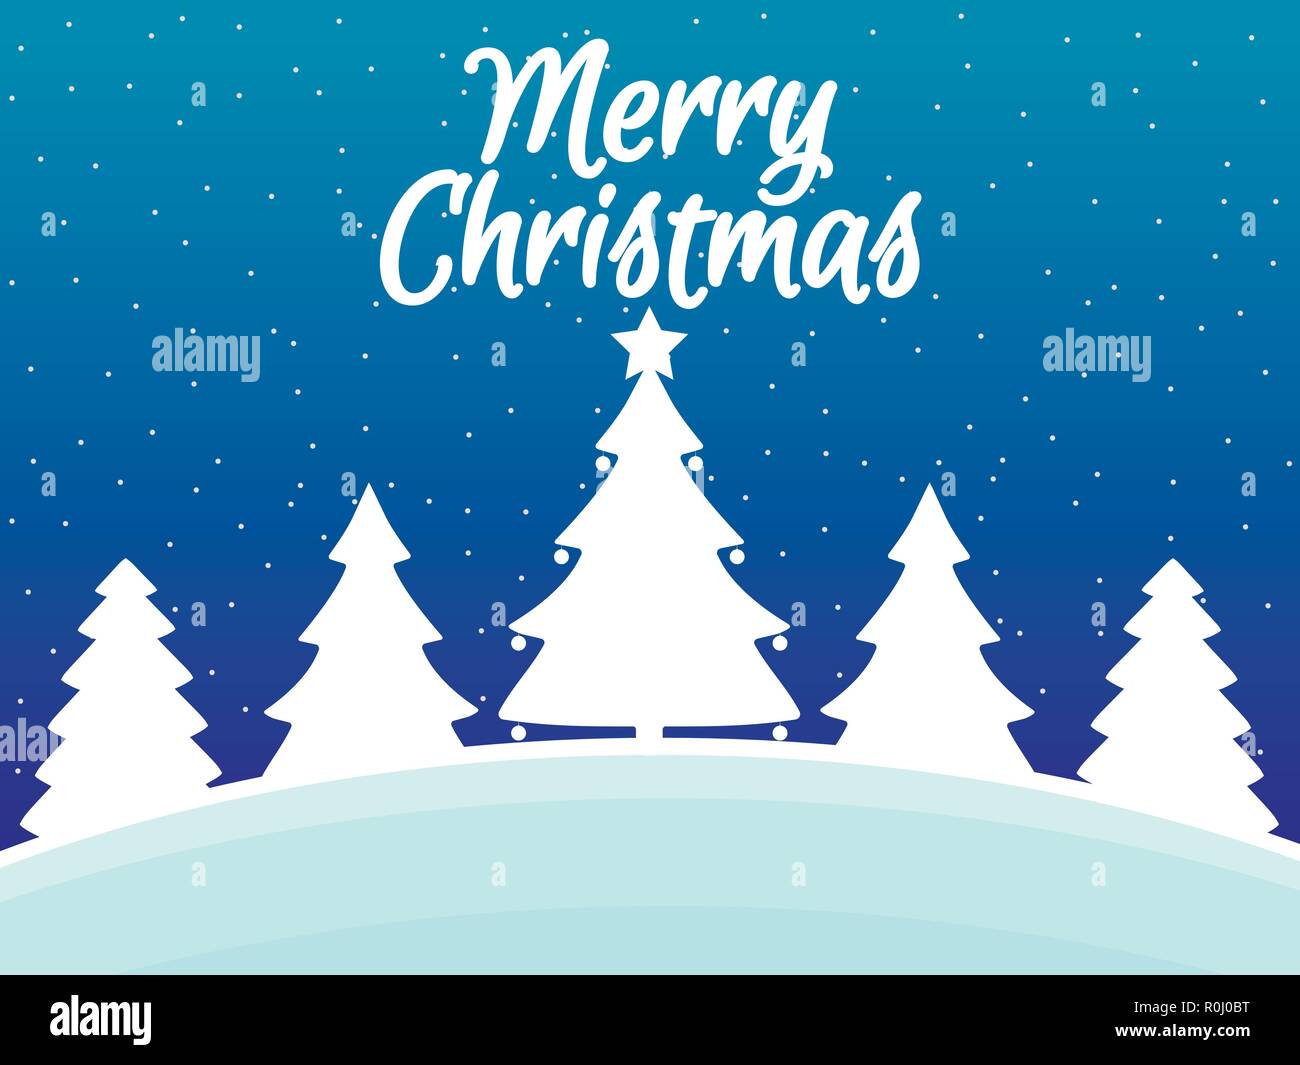 Buon Natale Paesaggi.Auguri Di Buon Natale Paesaggio Invernale Con I Fiocchi Di Neve E Alberi Di Natale Sfondo Di Natale Illustrazione Vettoriale Immagine E Vettoriale Alamy